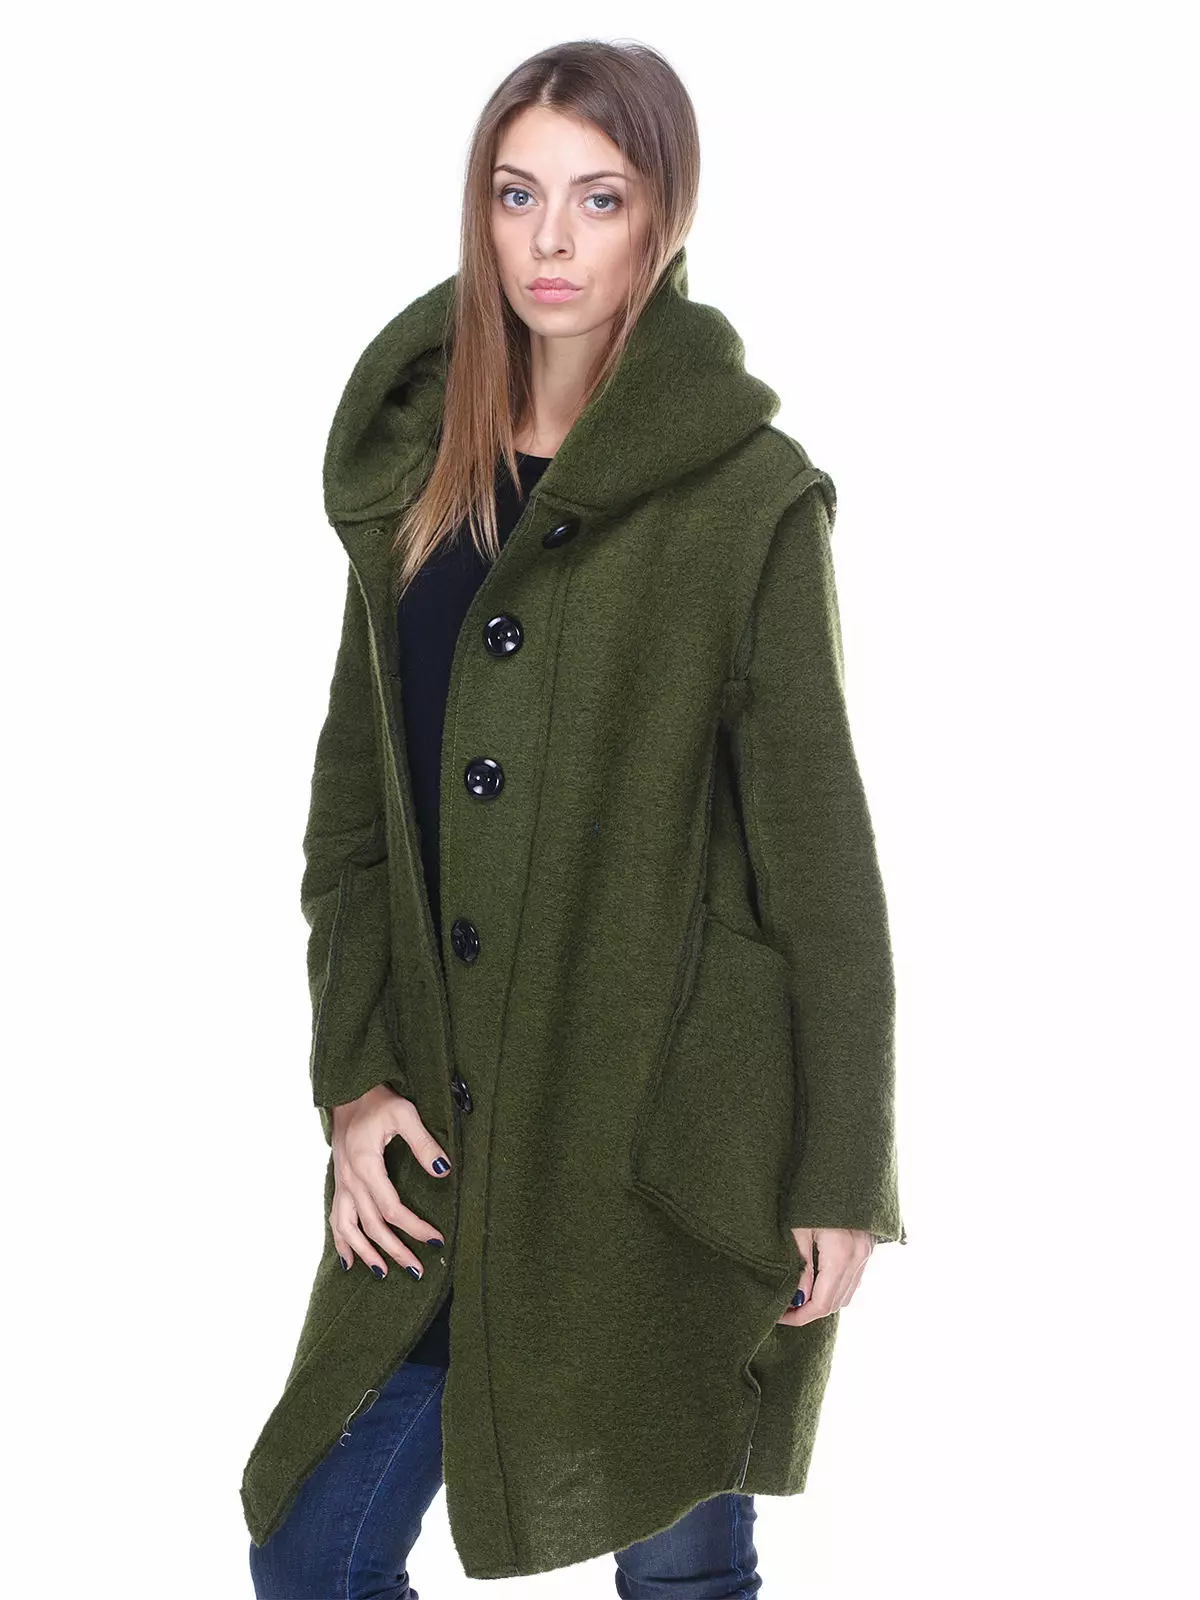 グリーンコート（122写真）を着用するもの：濃い緑、スカーフがフィット、バッグ、アクセサリー、英語の襟付きコート 601_45